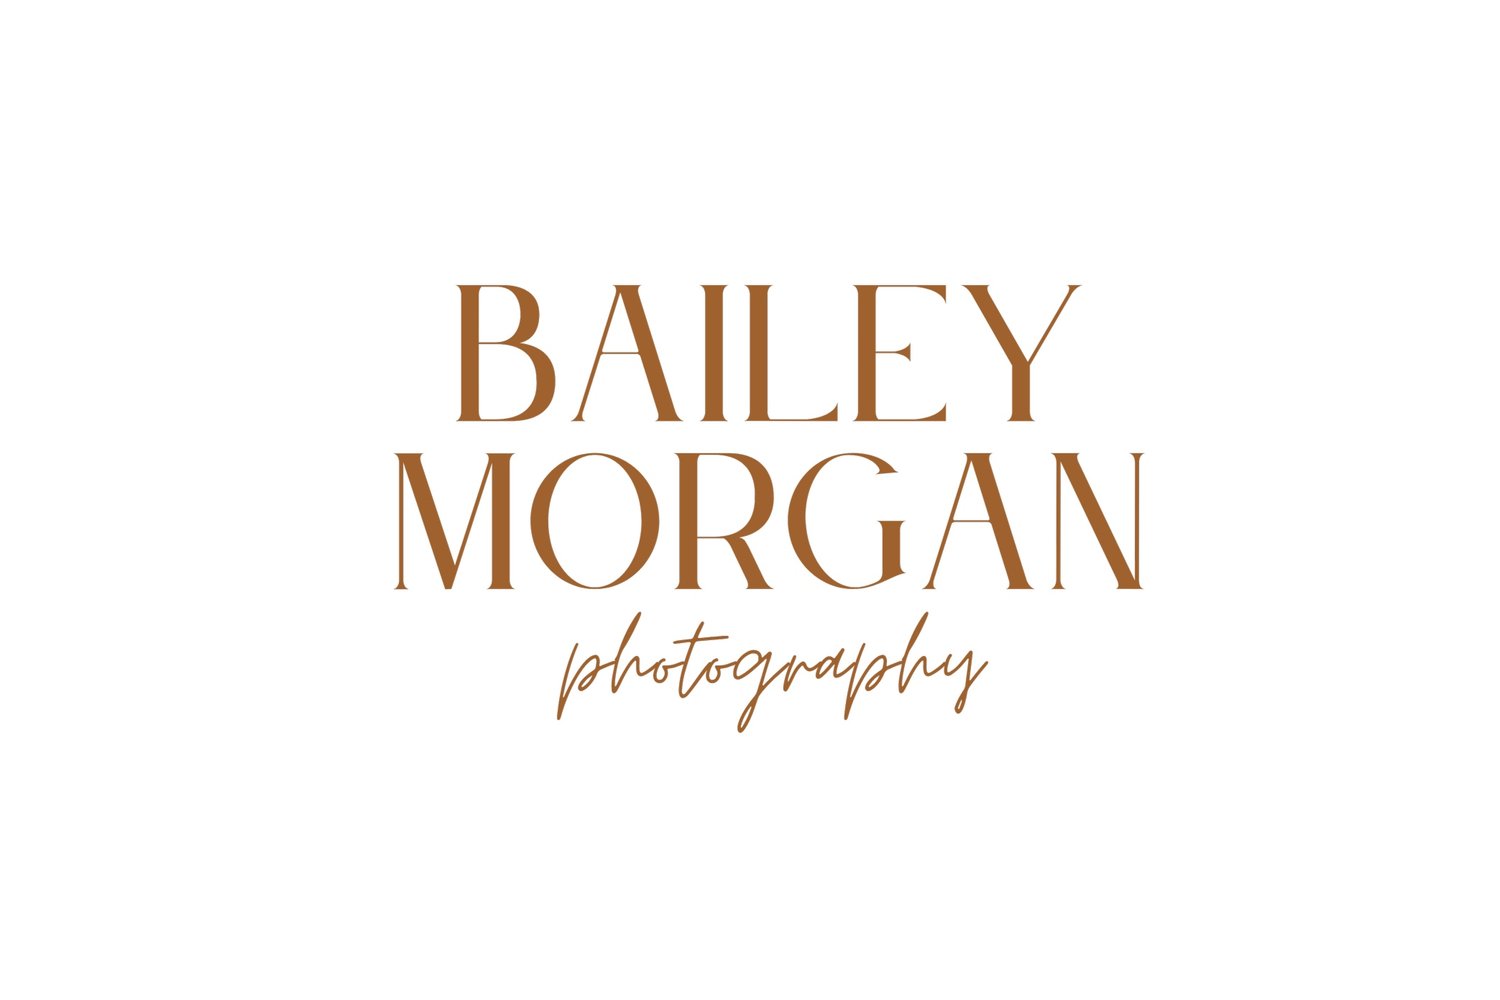 BAILEY MORGAN PHOTOGRAPHY